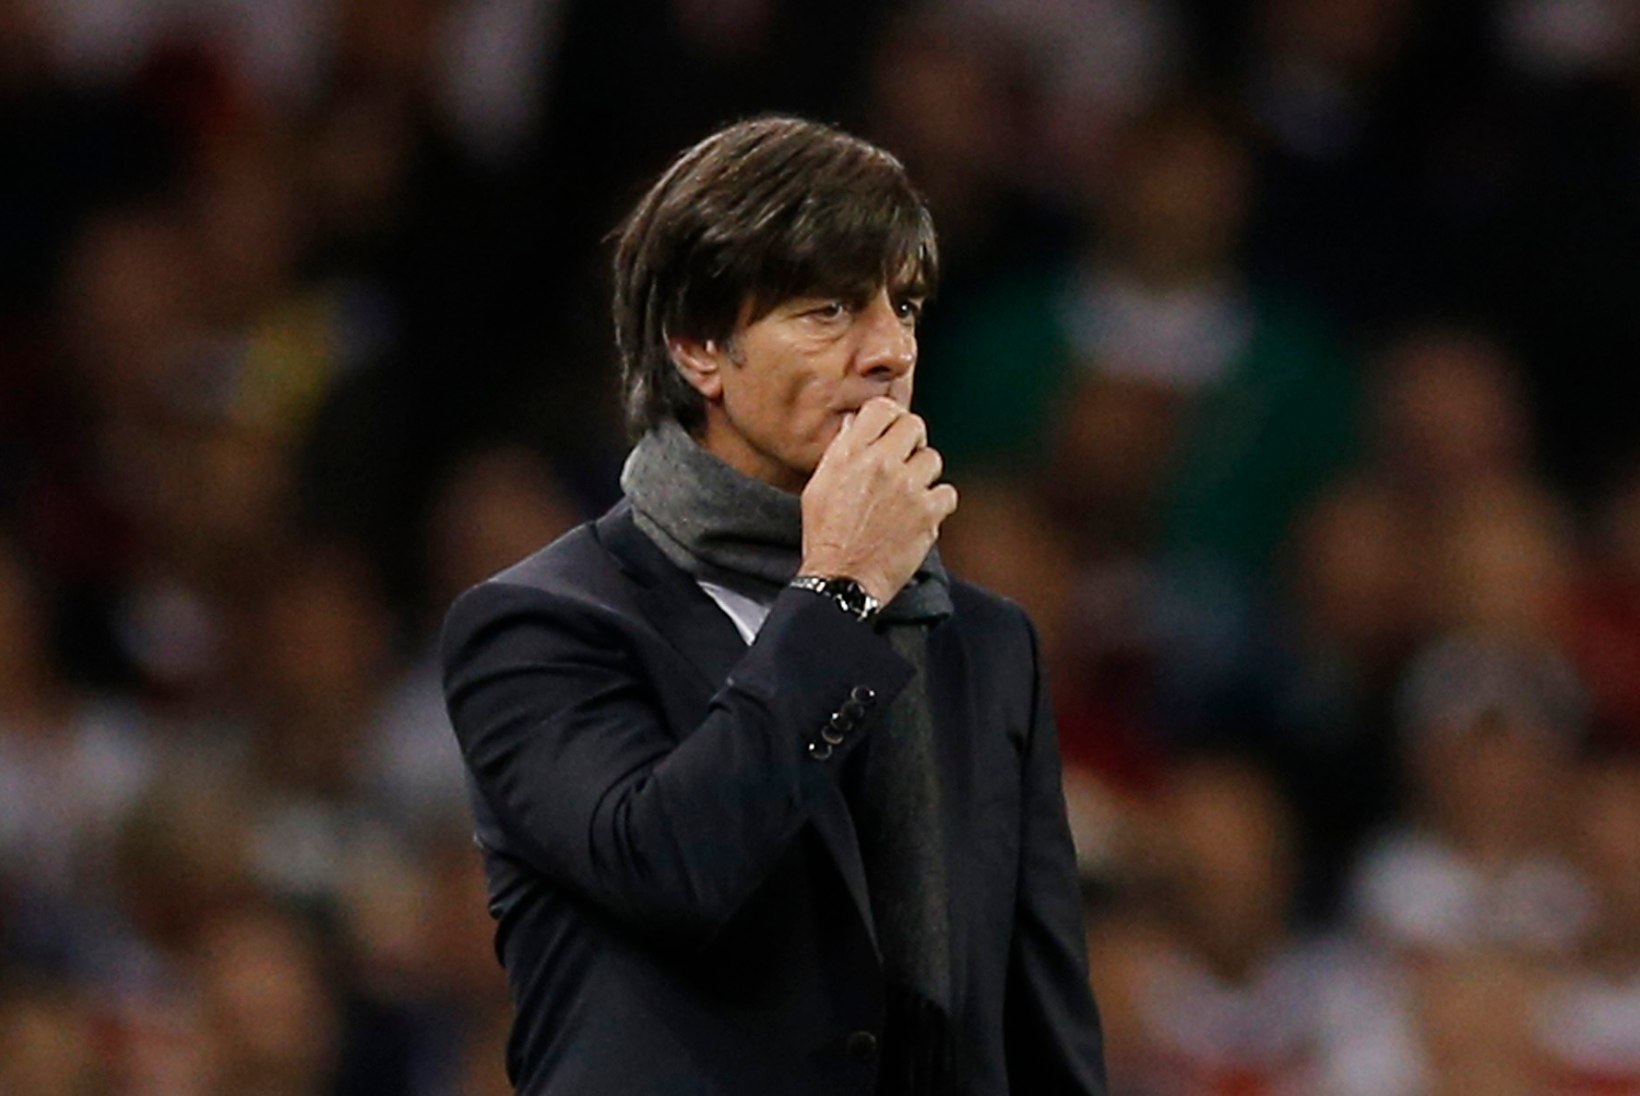 Saksamaa jalgpallikoondise peatreener paljastas terroriõhtu kohta uue detaili